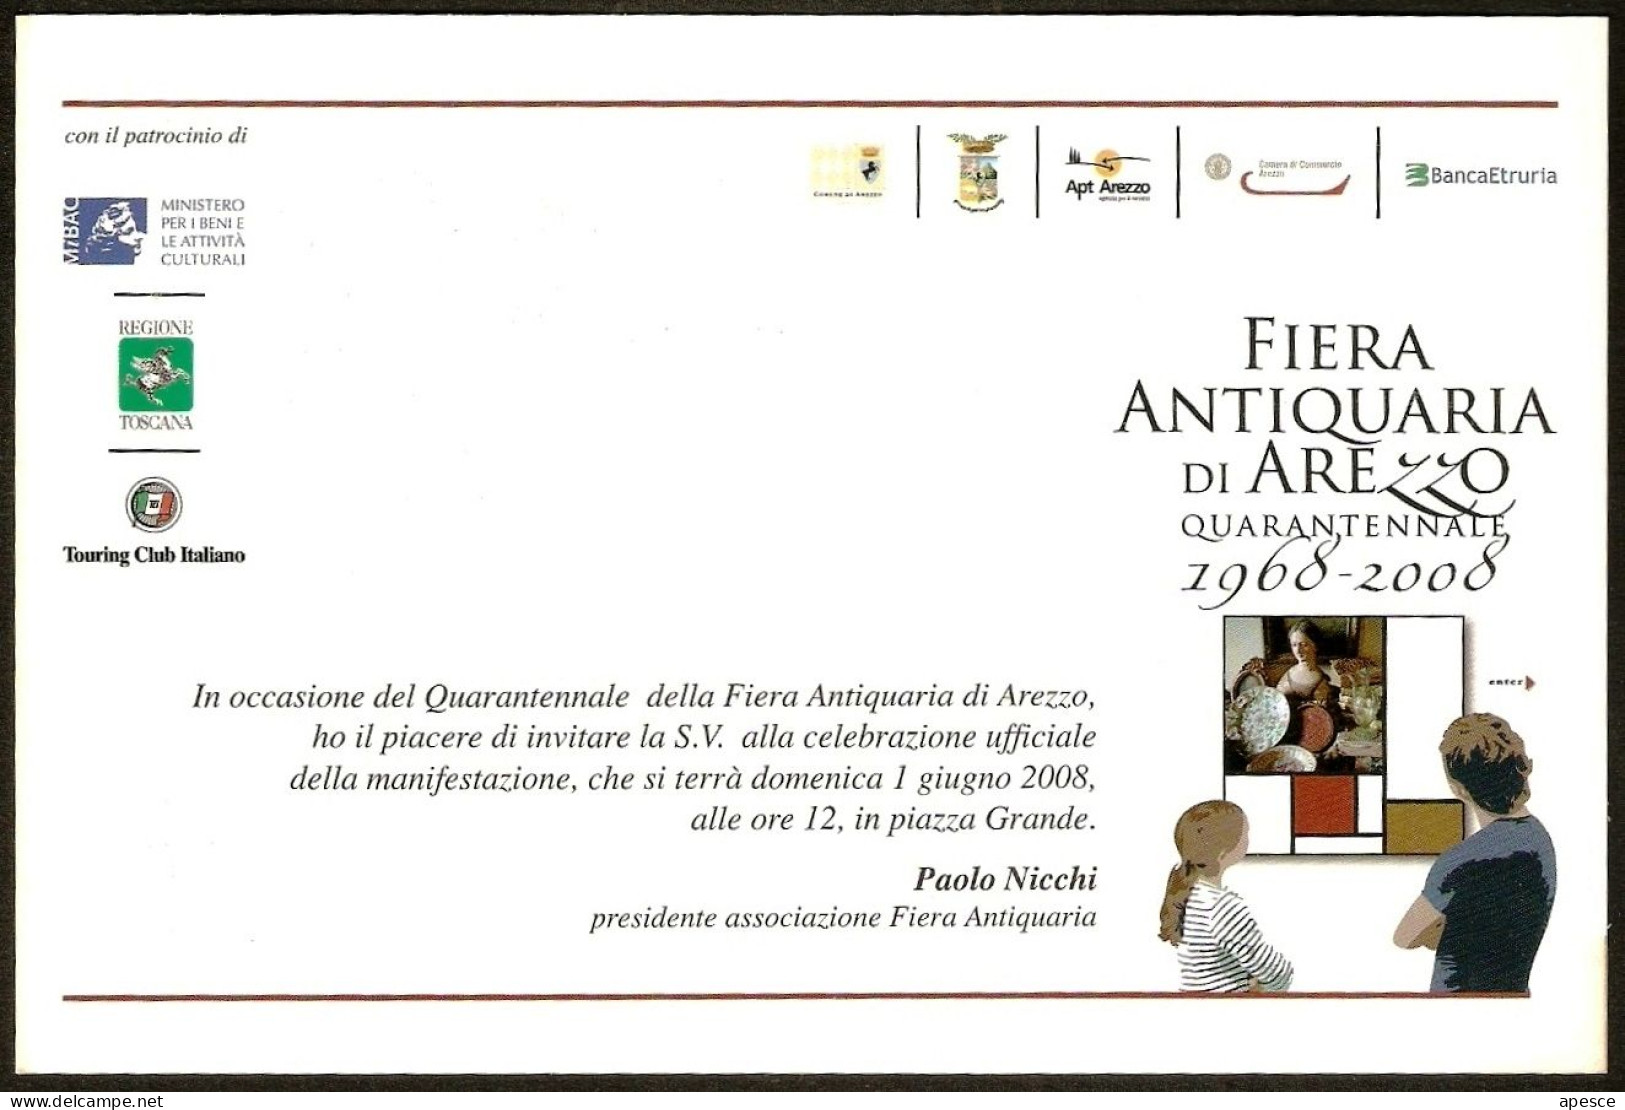 ITALIA - FIERA ANTIQUARIA DI AREZZO - QUARANTENNALE - 1968/2008 - CARTOLINA INVITO MANIFESTAZIONE - I - Märkte